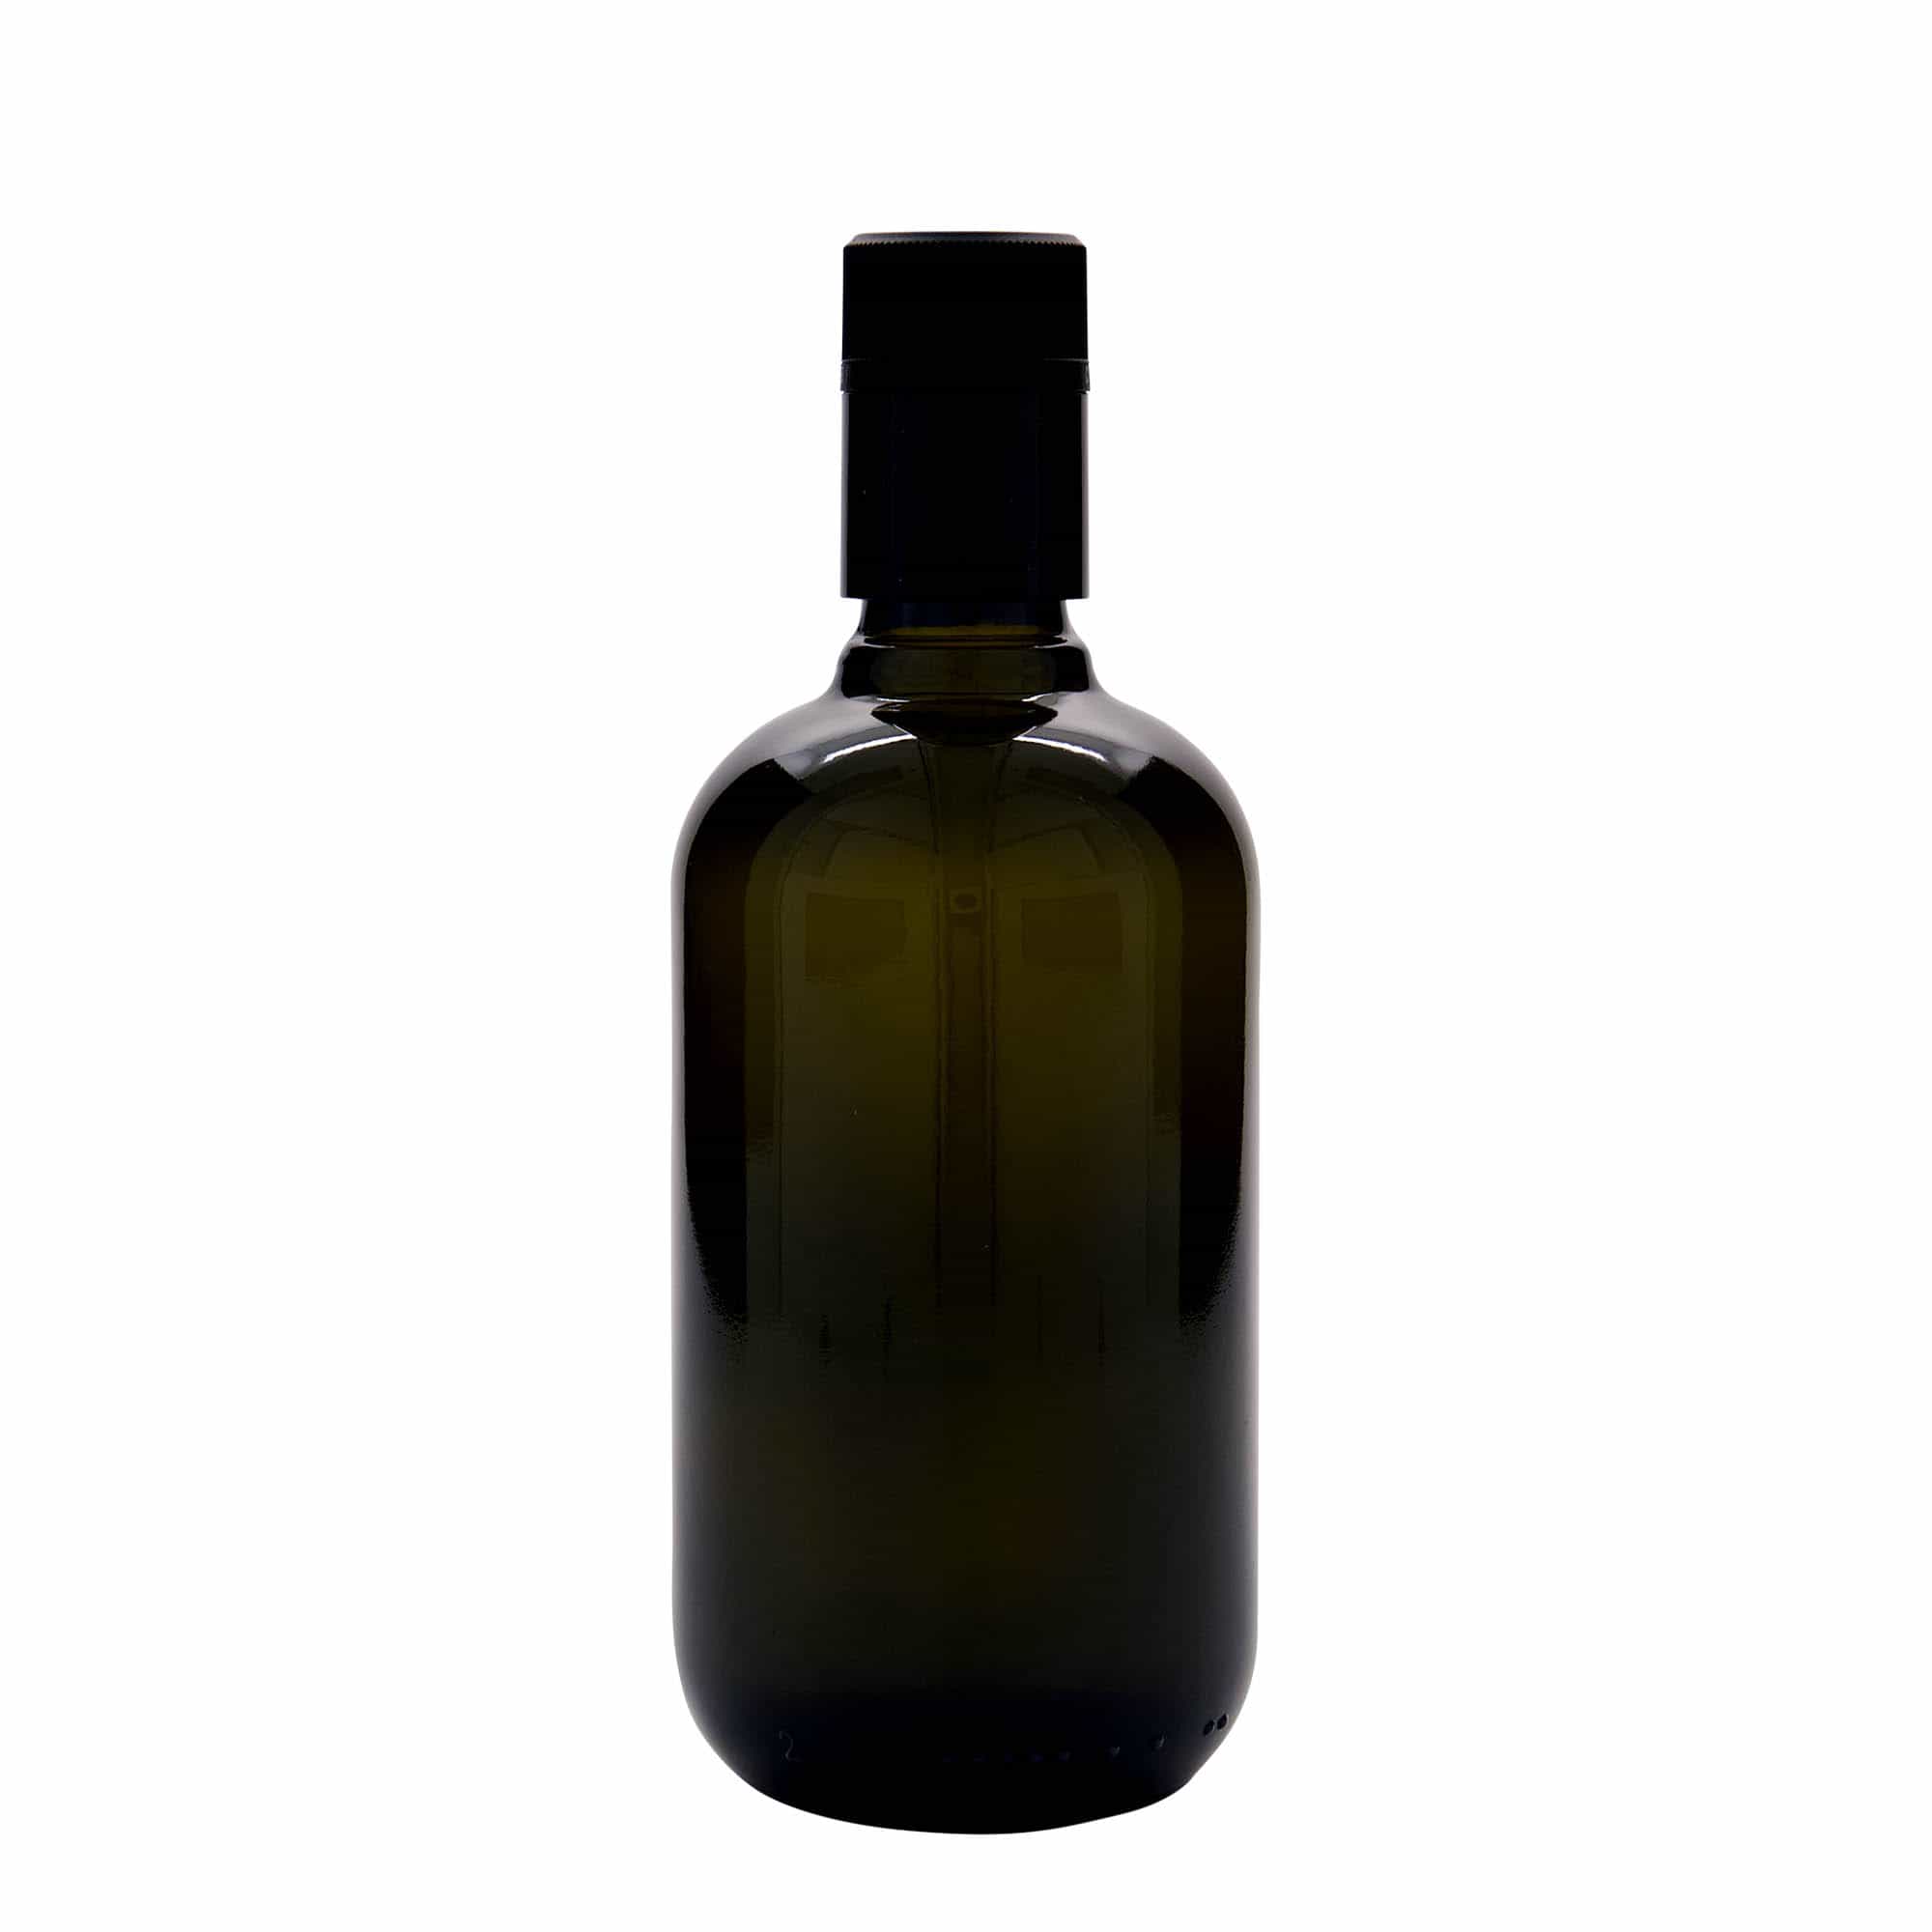 500 ml Bottiglia olio/aceto 'Biolio', vetro, verde antico, imboccatura: DOP